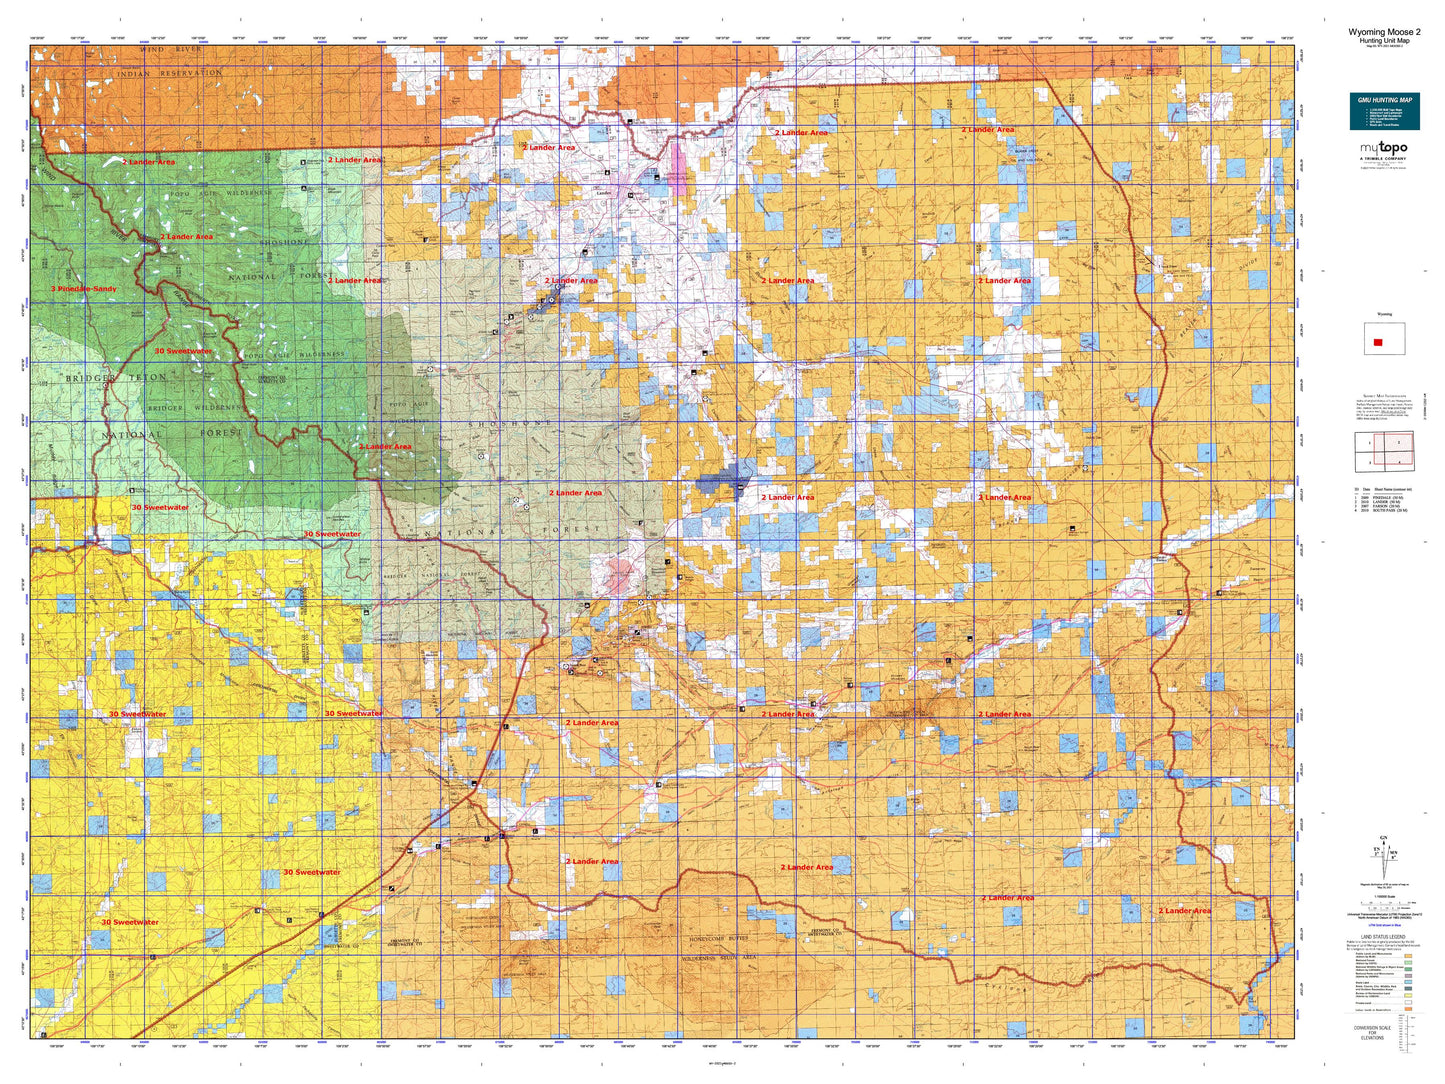 Wyoming Moose 2 Map Image